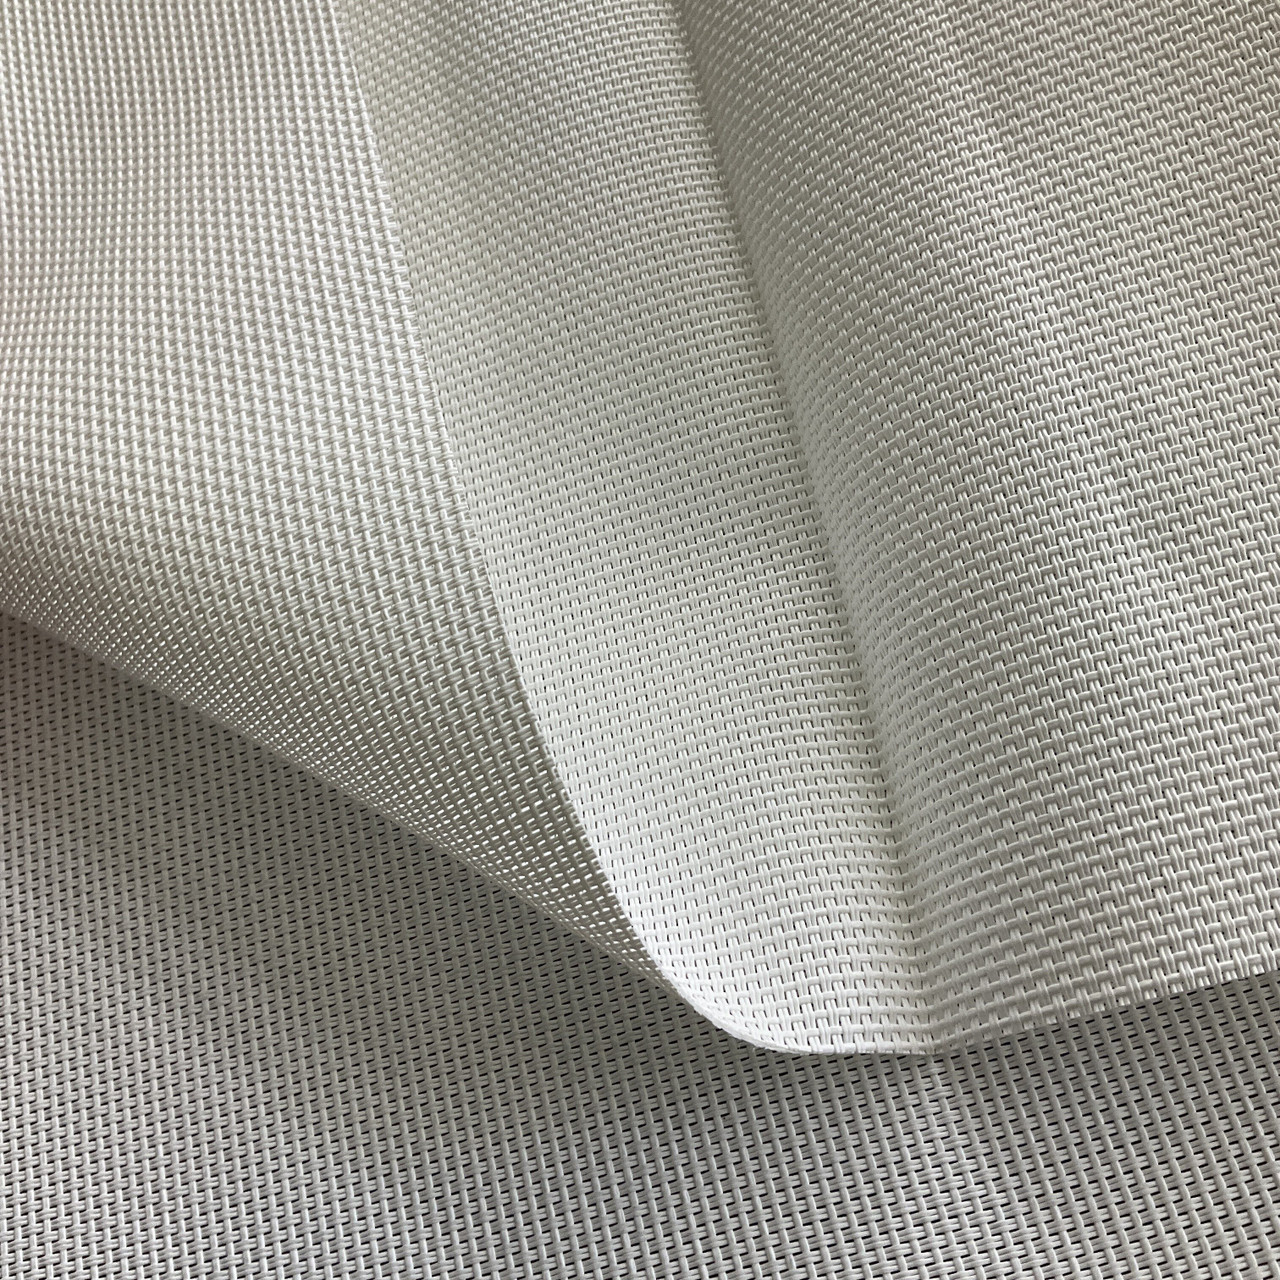 Phifertex White 000 54-inch Standard Mesh Fabric